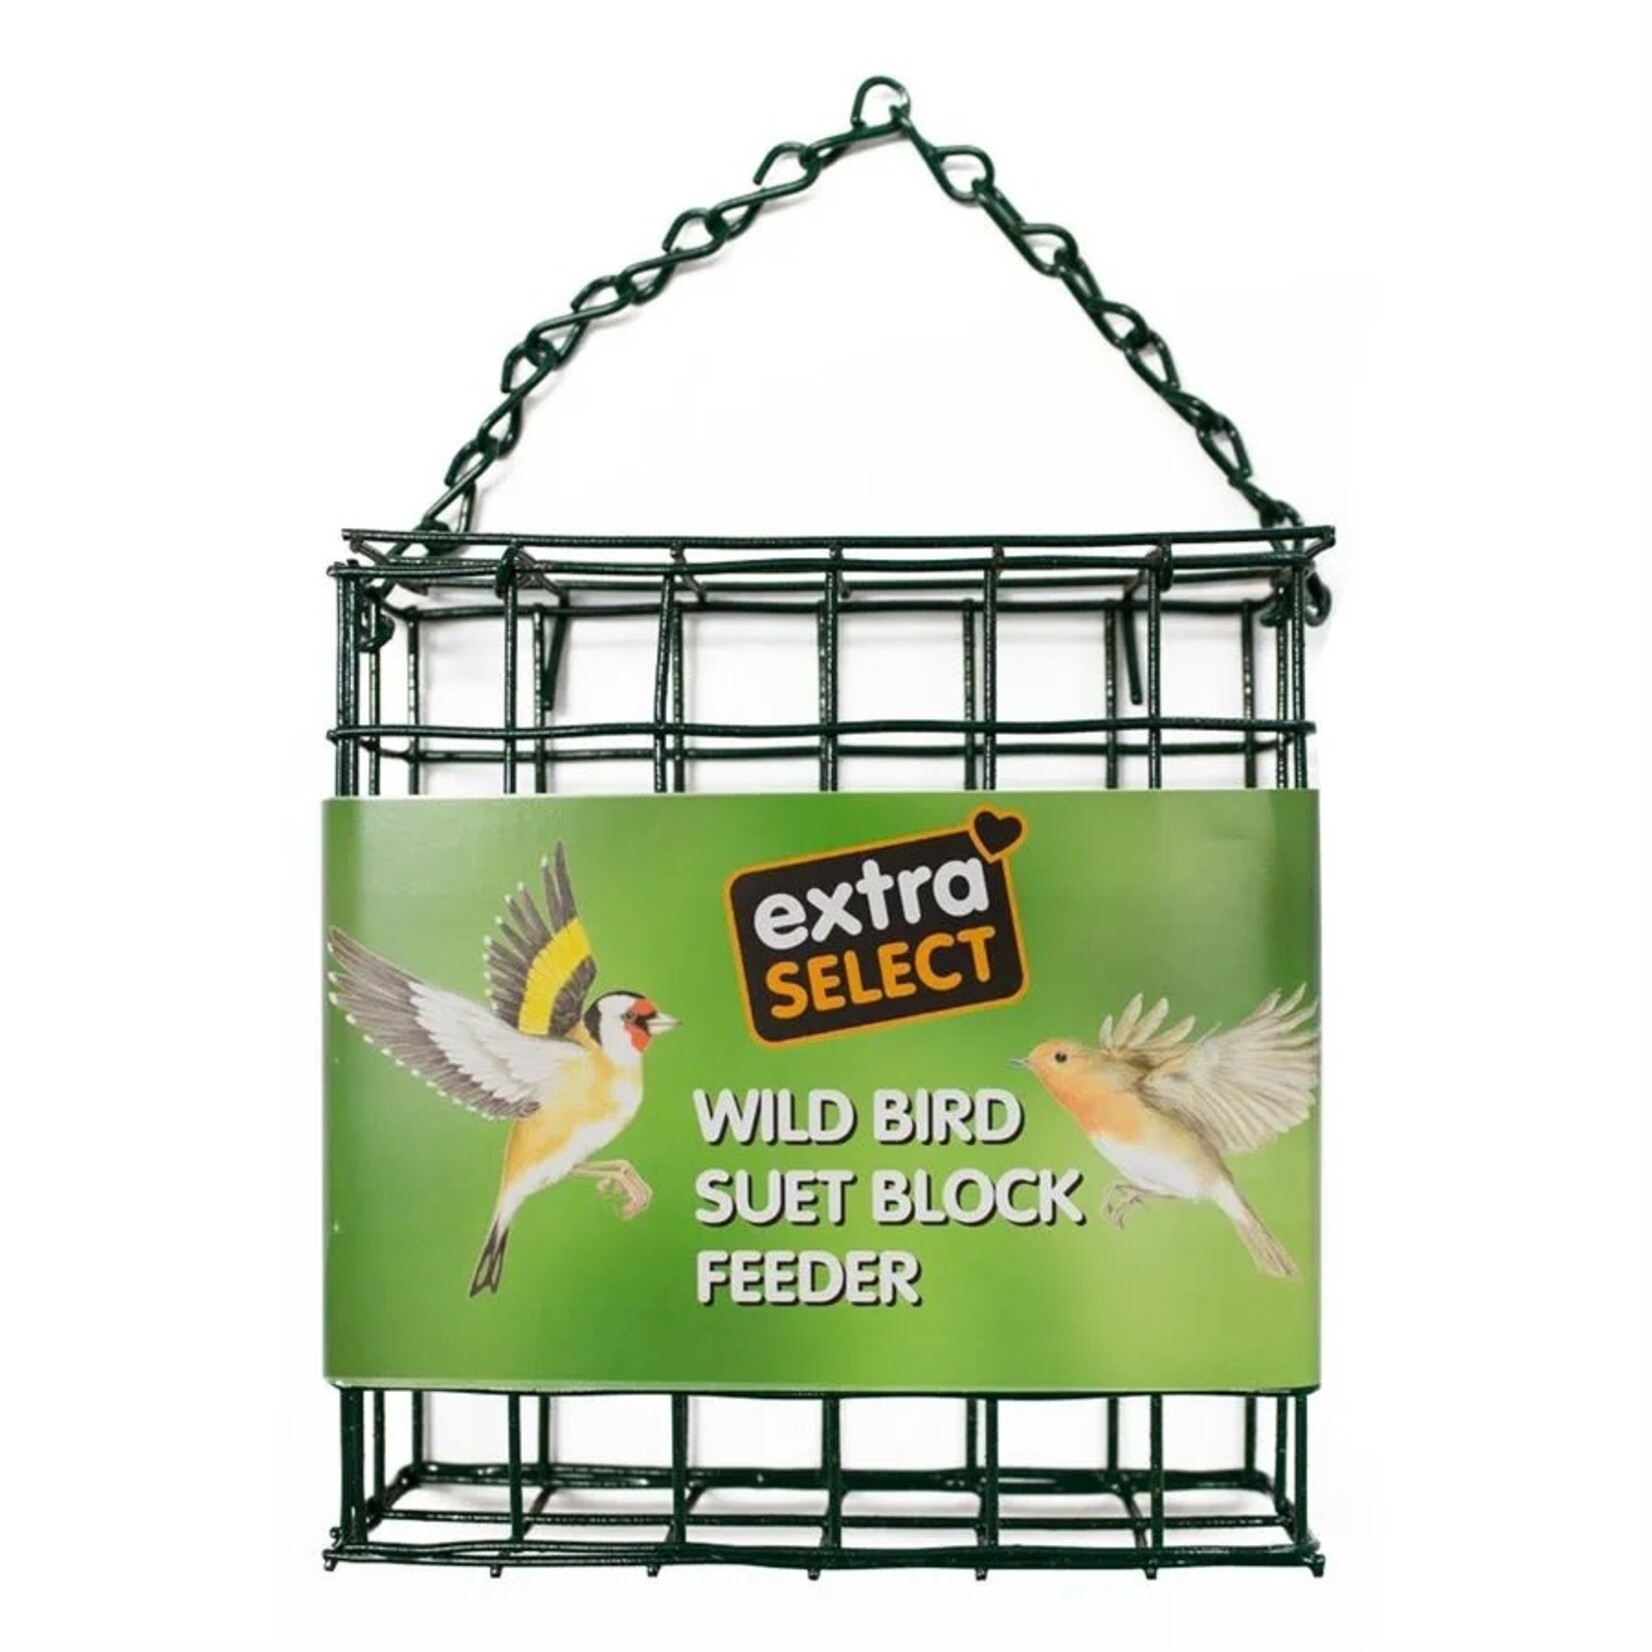 Extra Select Wild Bird Suet Block Feeder